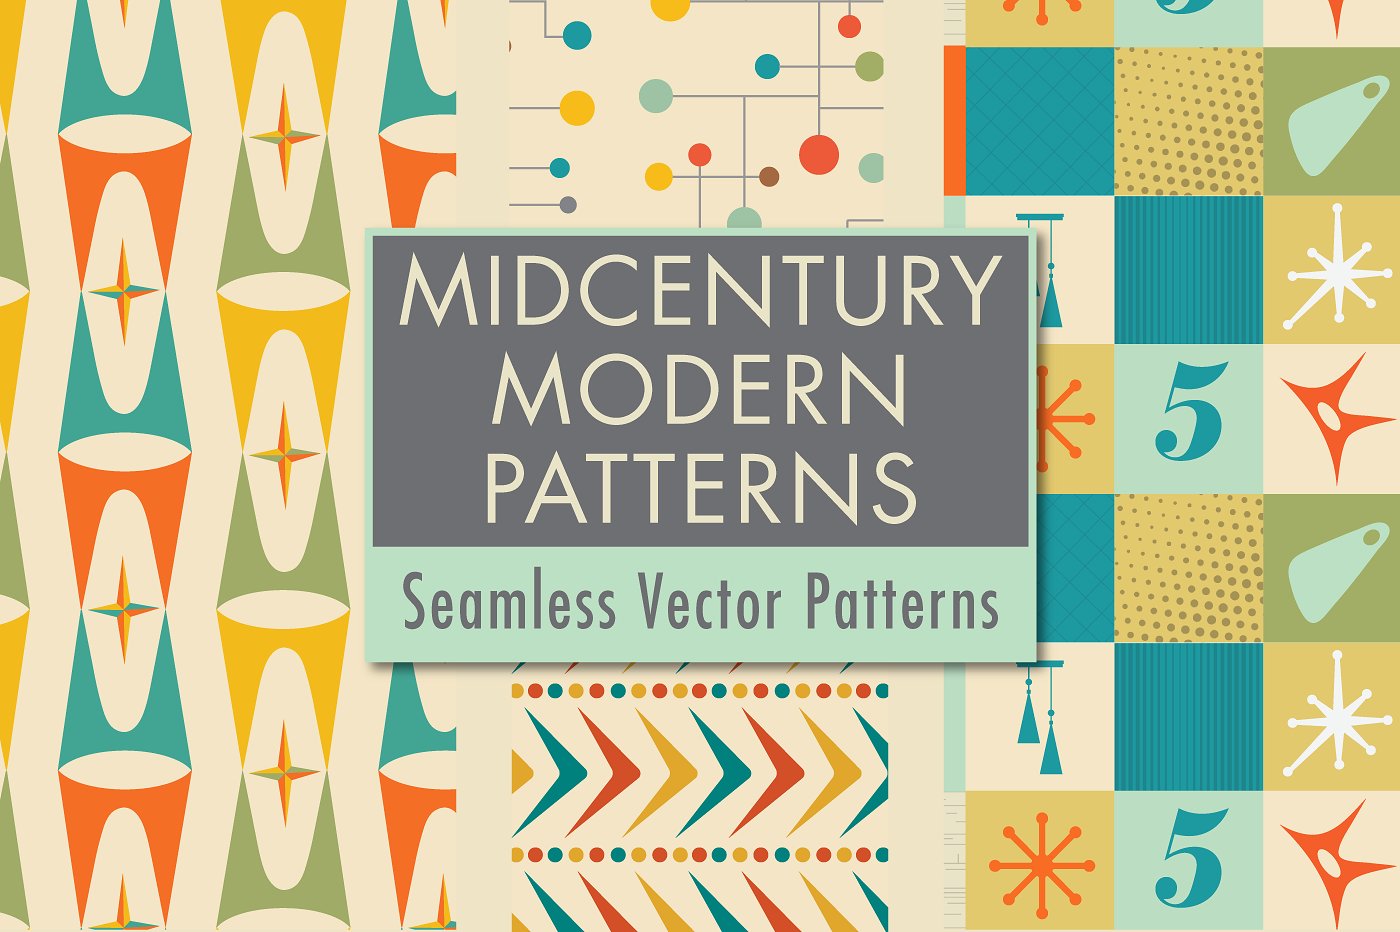 中世纪风格现代矢量图形 Mid Century Modern Patterns插图